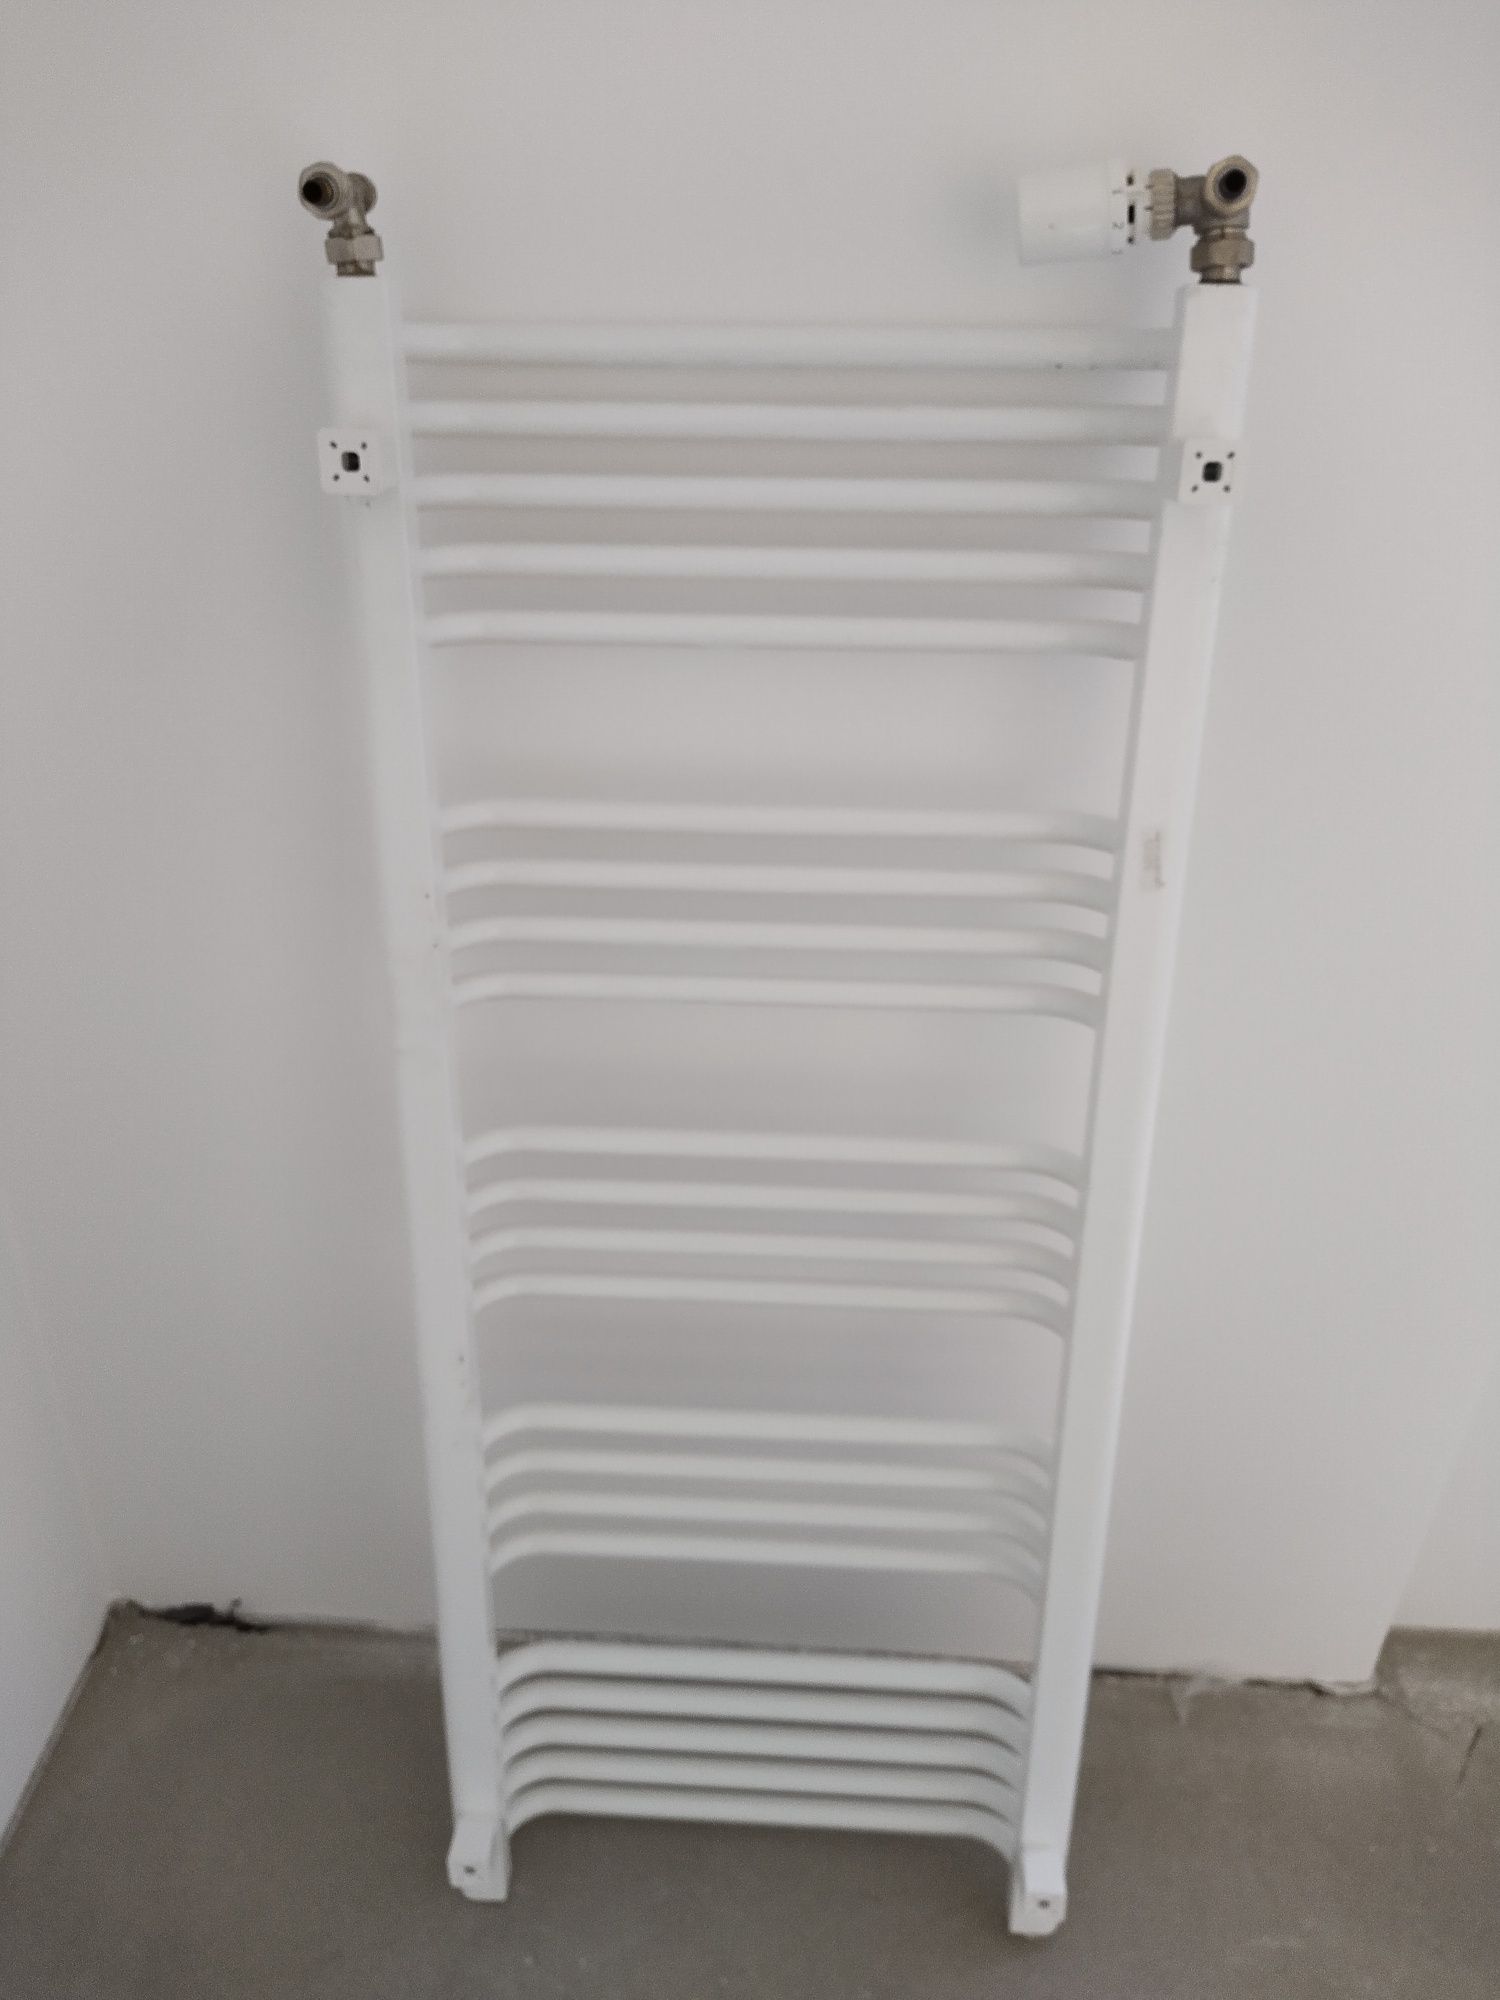 Grzejnik łazienkowy Ales 1220/500 biały + zawory + termostat Honeywell